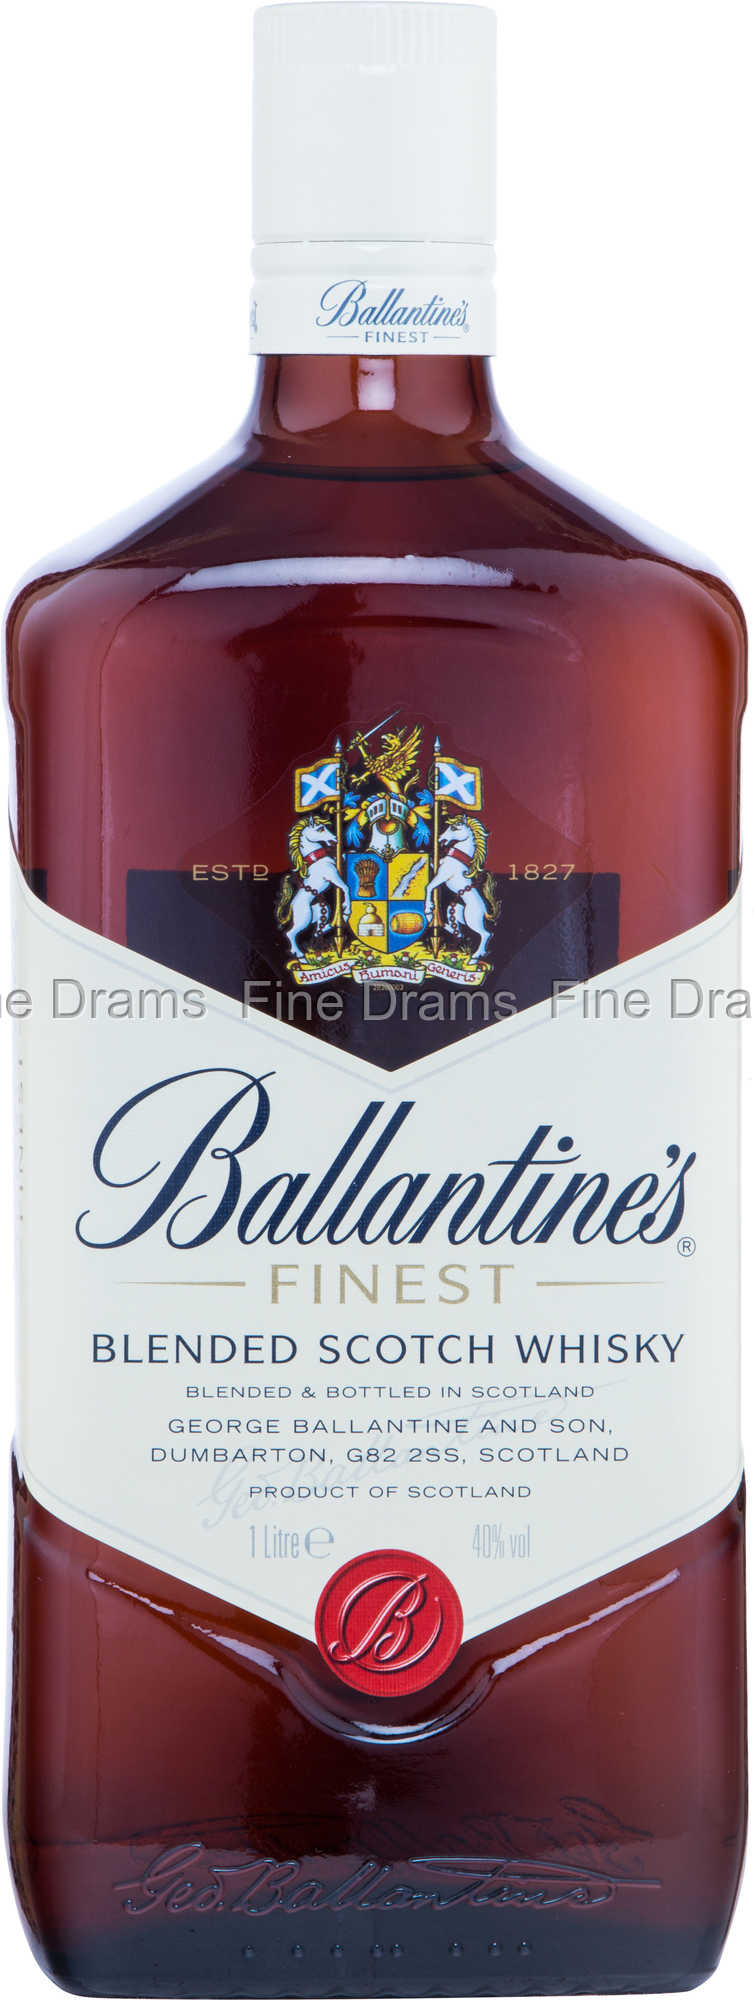 Blended Scotch Whisky Liter)